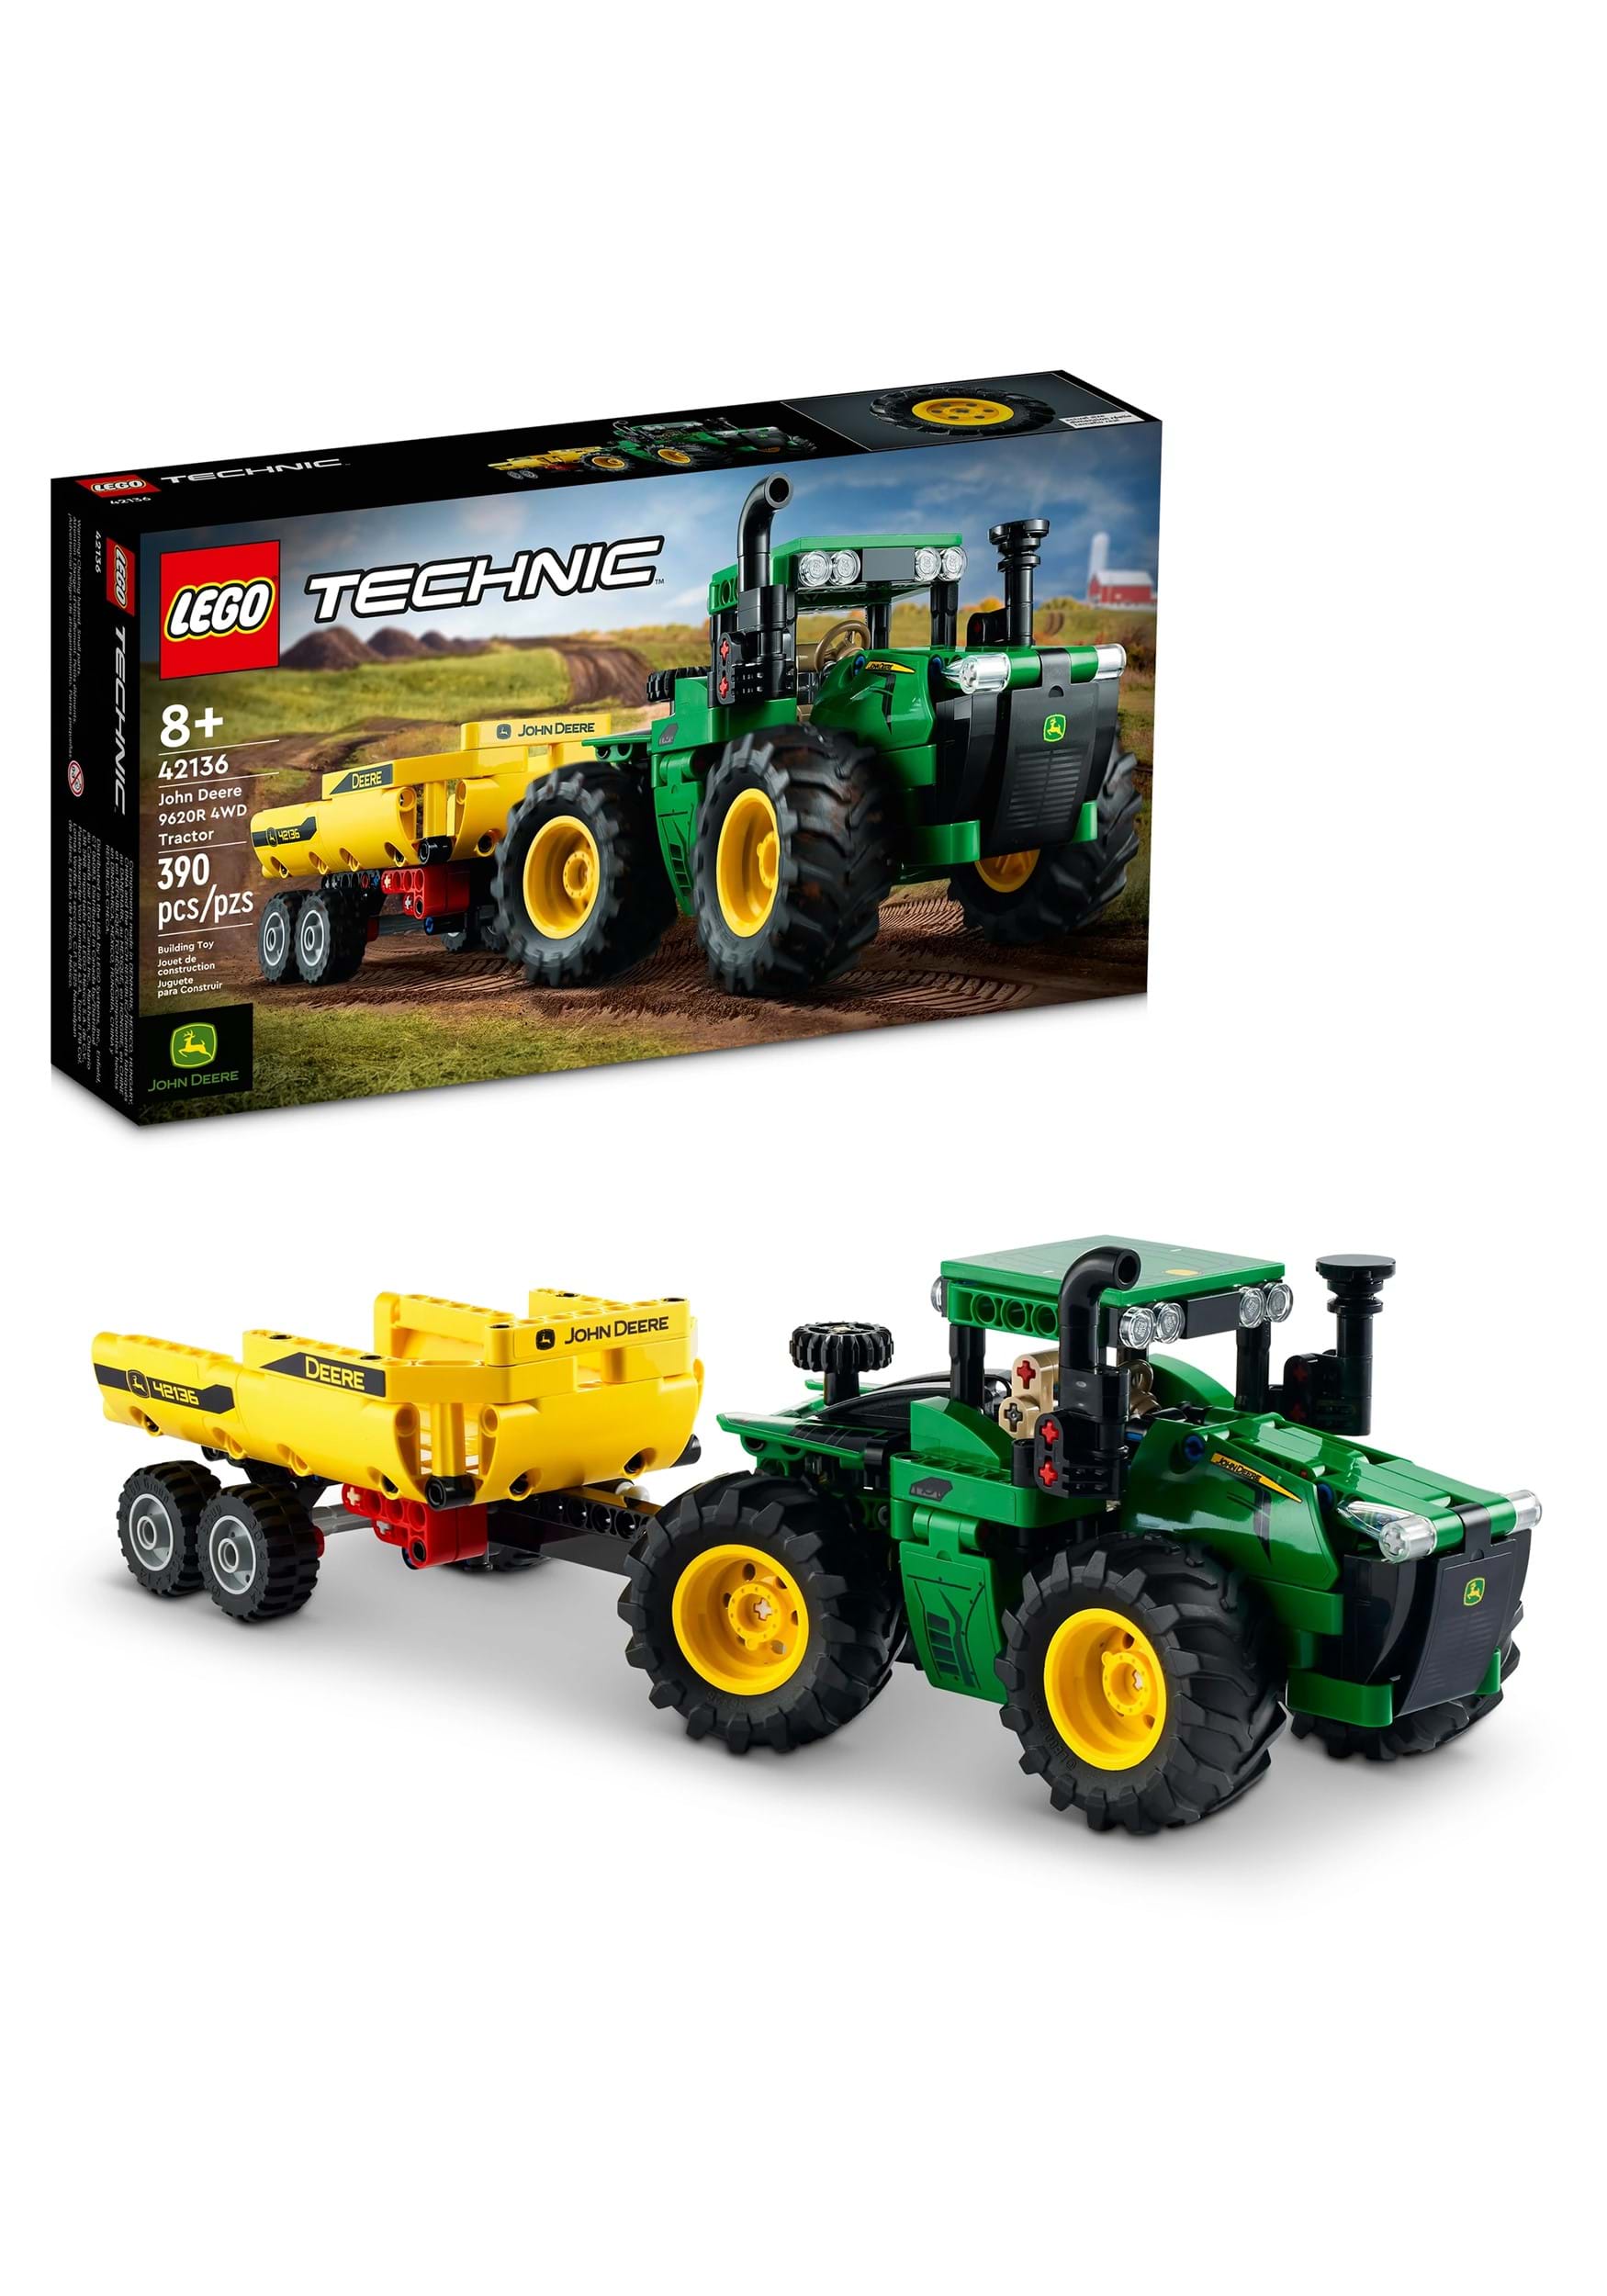 LEGO John Deere 9620R Tractor Technic Building Set